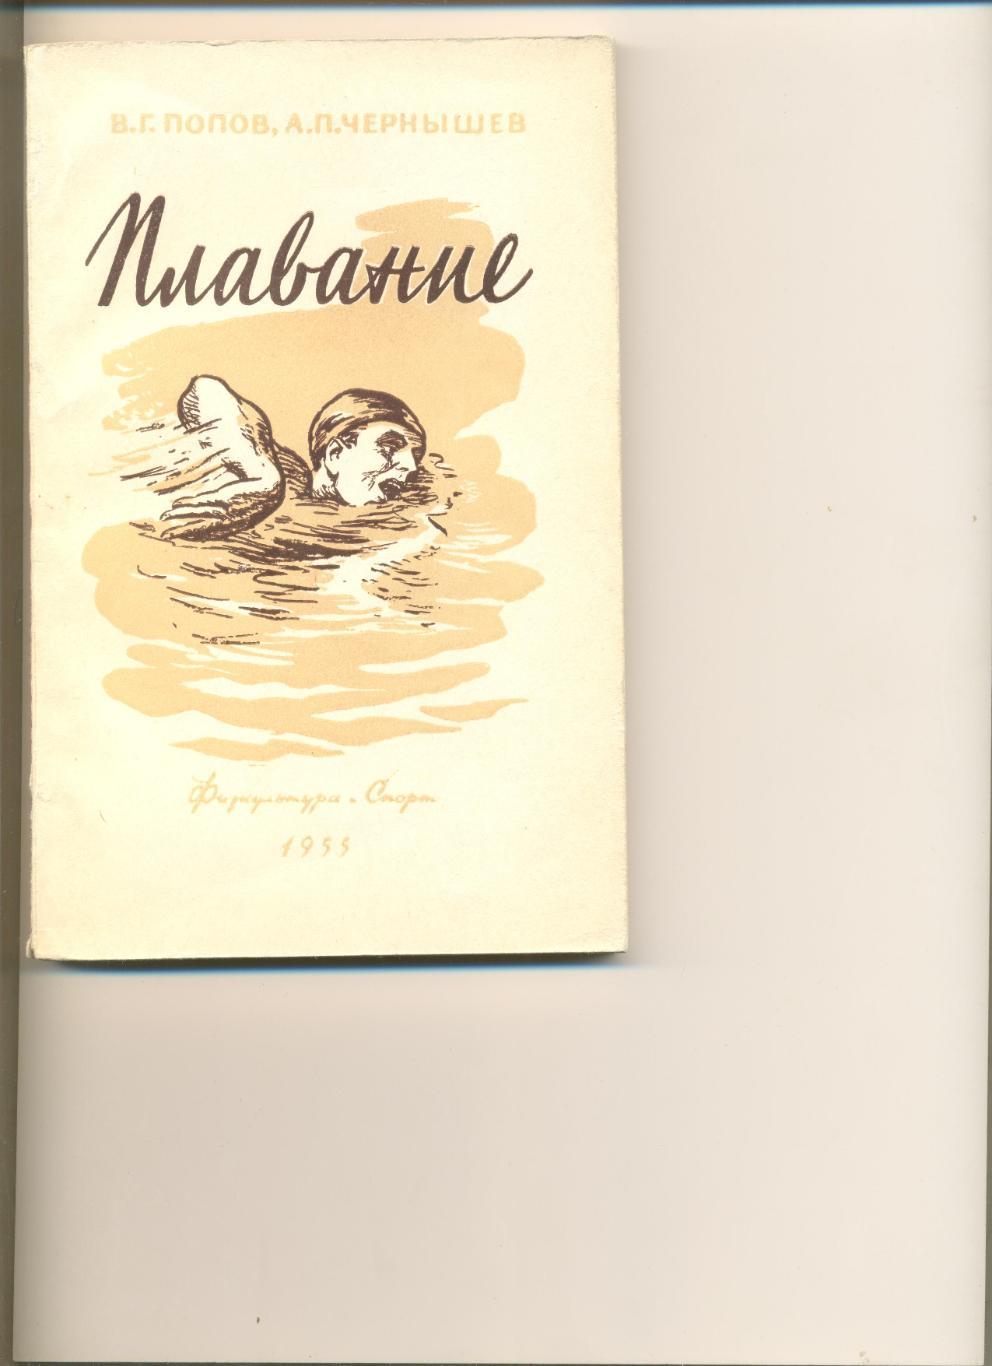 В. Попов, А. Чернышев. Плавание. Москва. ФиС. 1955 г. 190 стр.